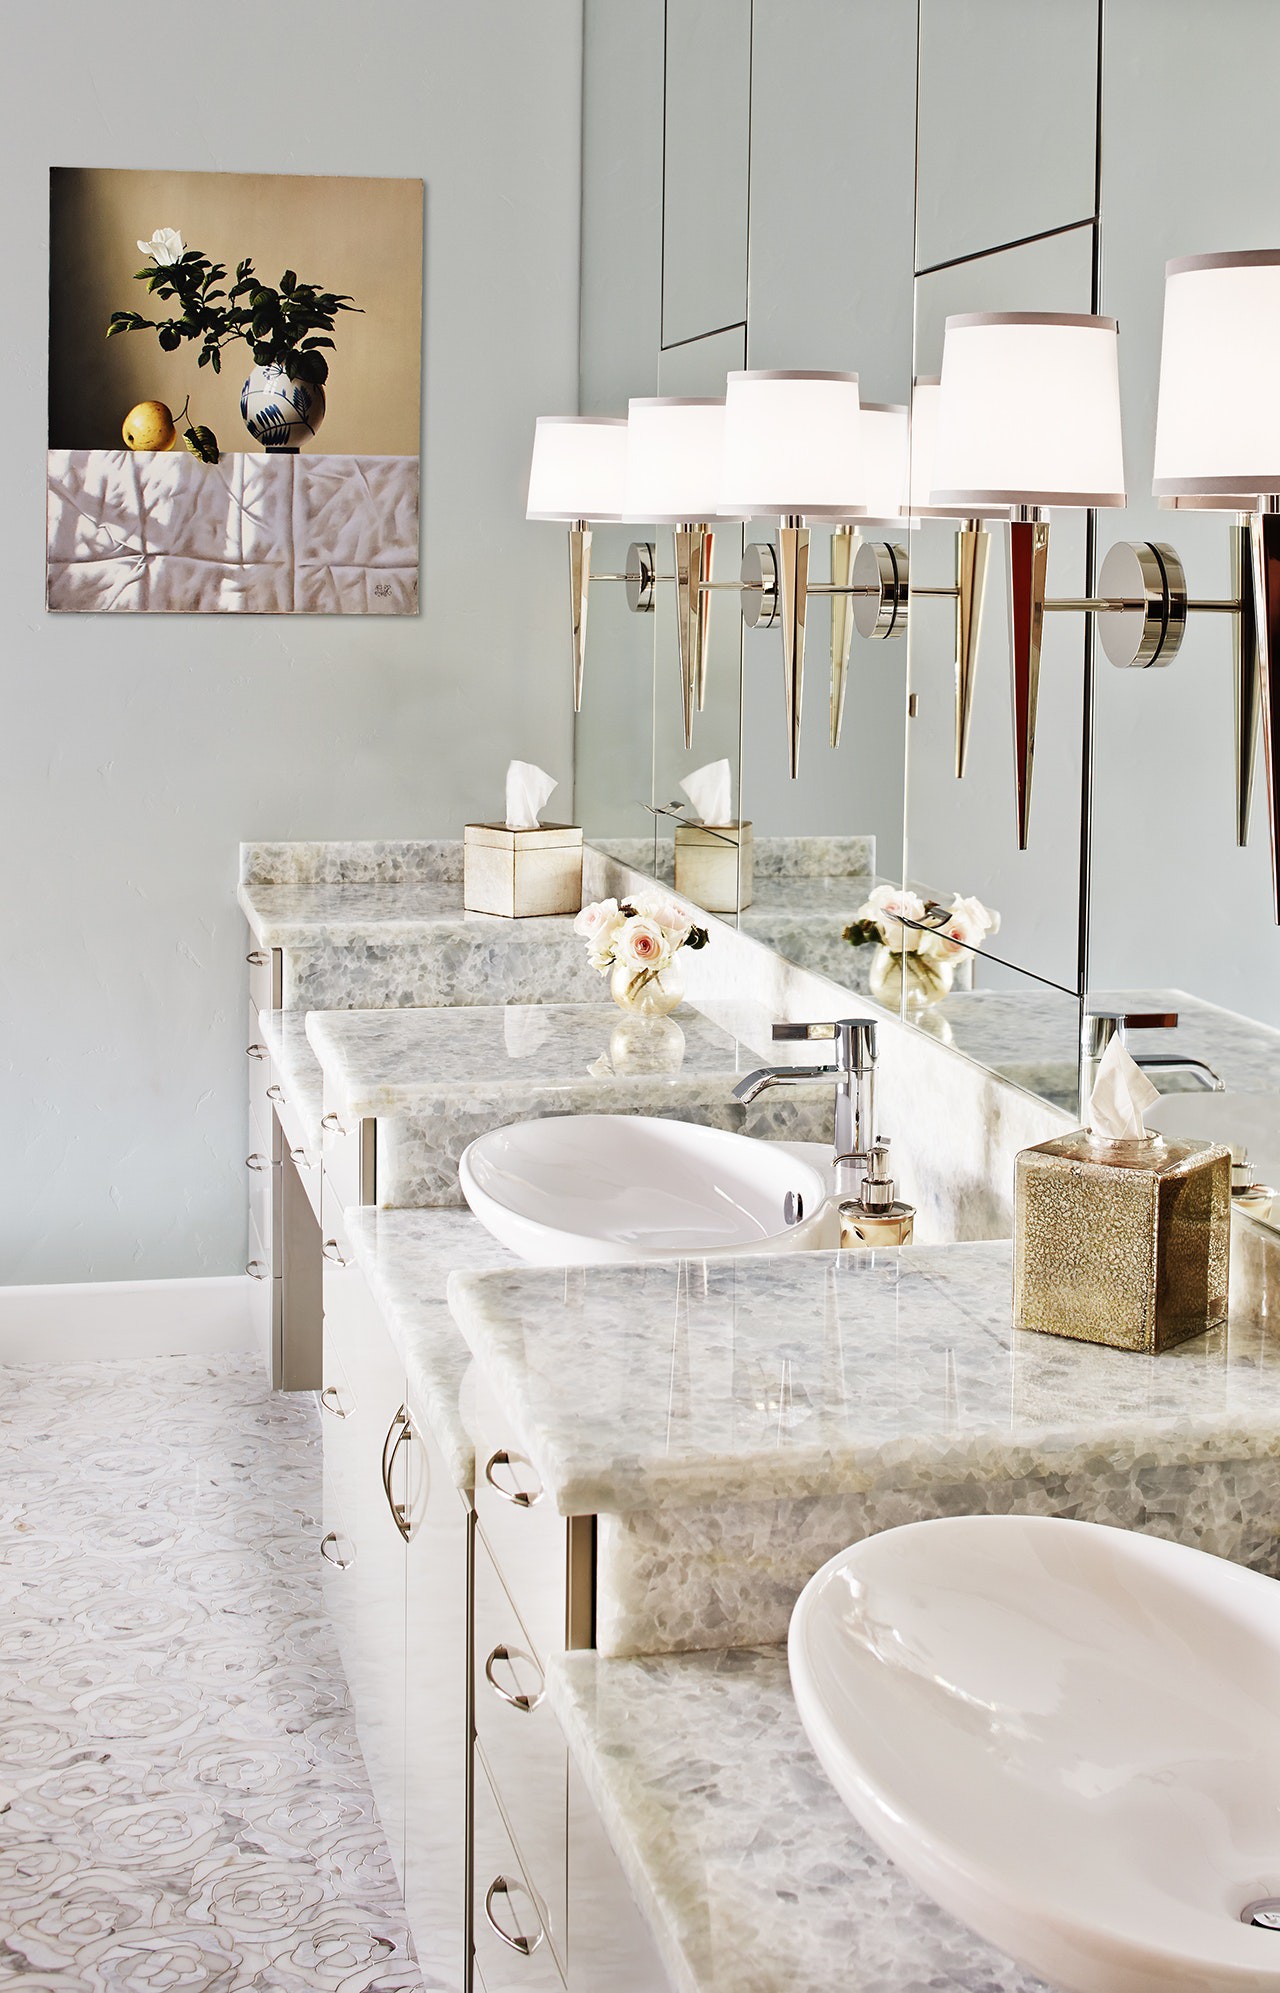 Phòng tắm sang trọng với sàn nhà lát gạch hoa đẹp mắt, bệ rửa bằng đá cẩm thạch, đèn trang trí bắt mắt